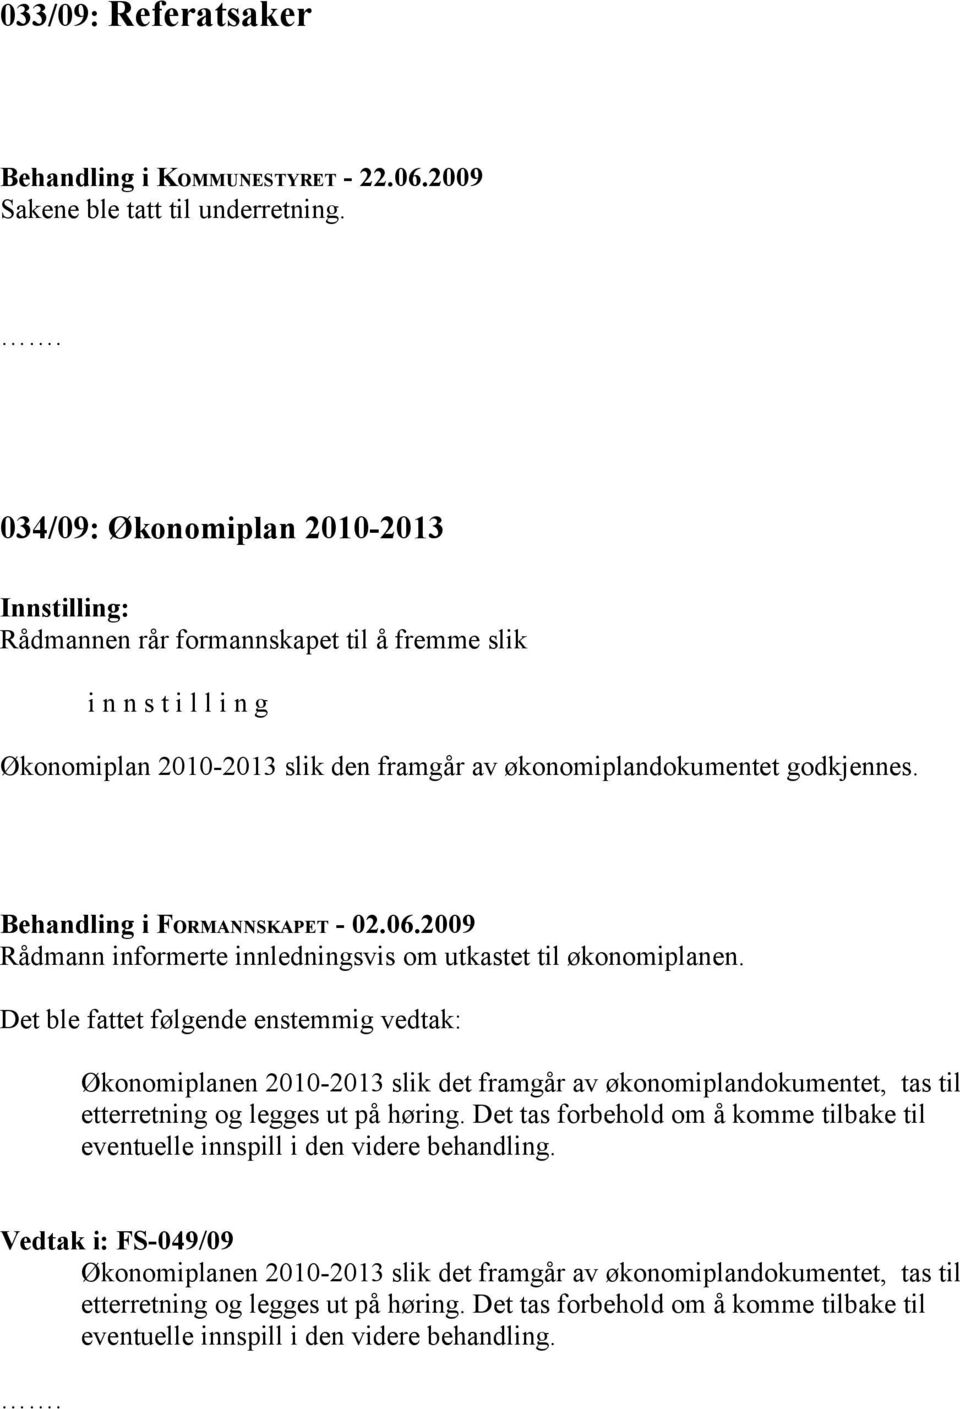 Behandling i FORMANNSKAPET - 02.06.2009 Rådmann informerte innledningsvis om utkastet til økonomiplanen.